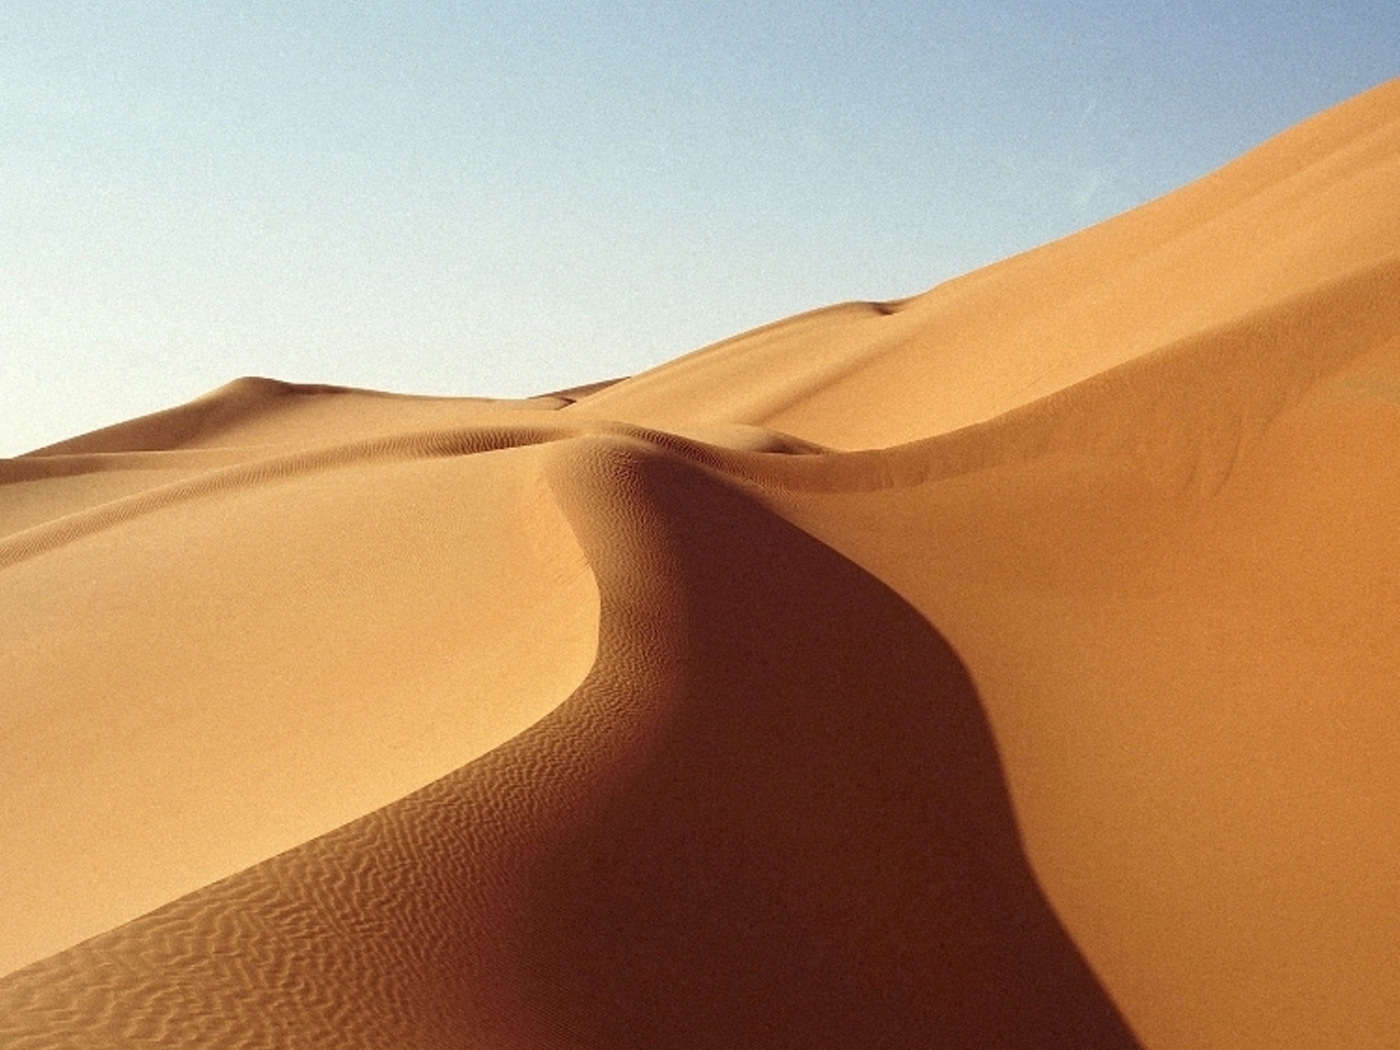 Скачать обои бесплатно Песок, Пустыня, Пейзаж картинка на рабочий стол ПК